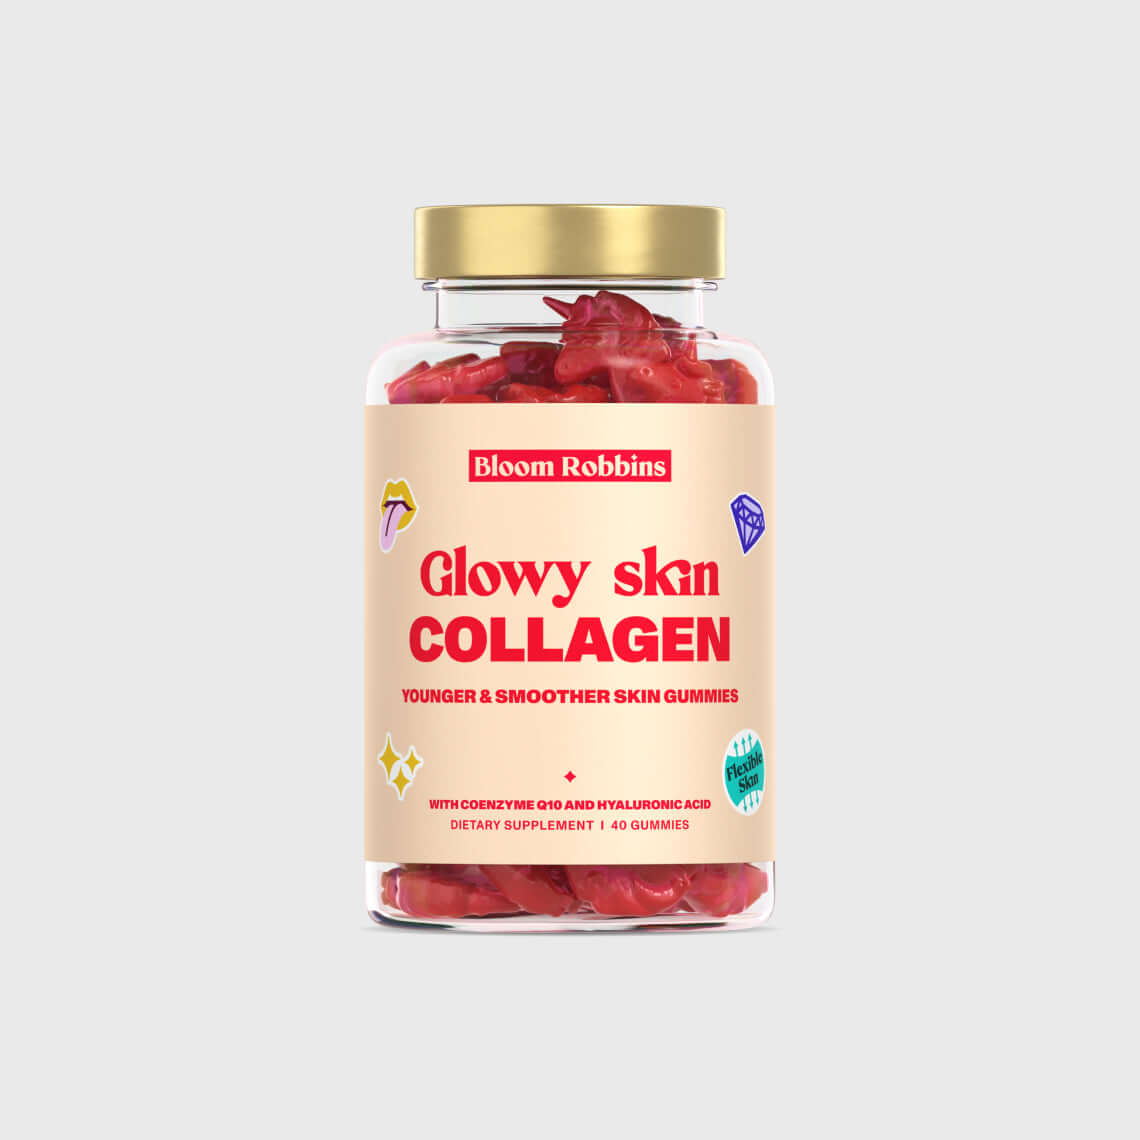 Vitamini za izboljšanje kože s kolagenom - vitamisnki gumijasti bomboni